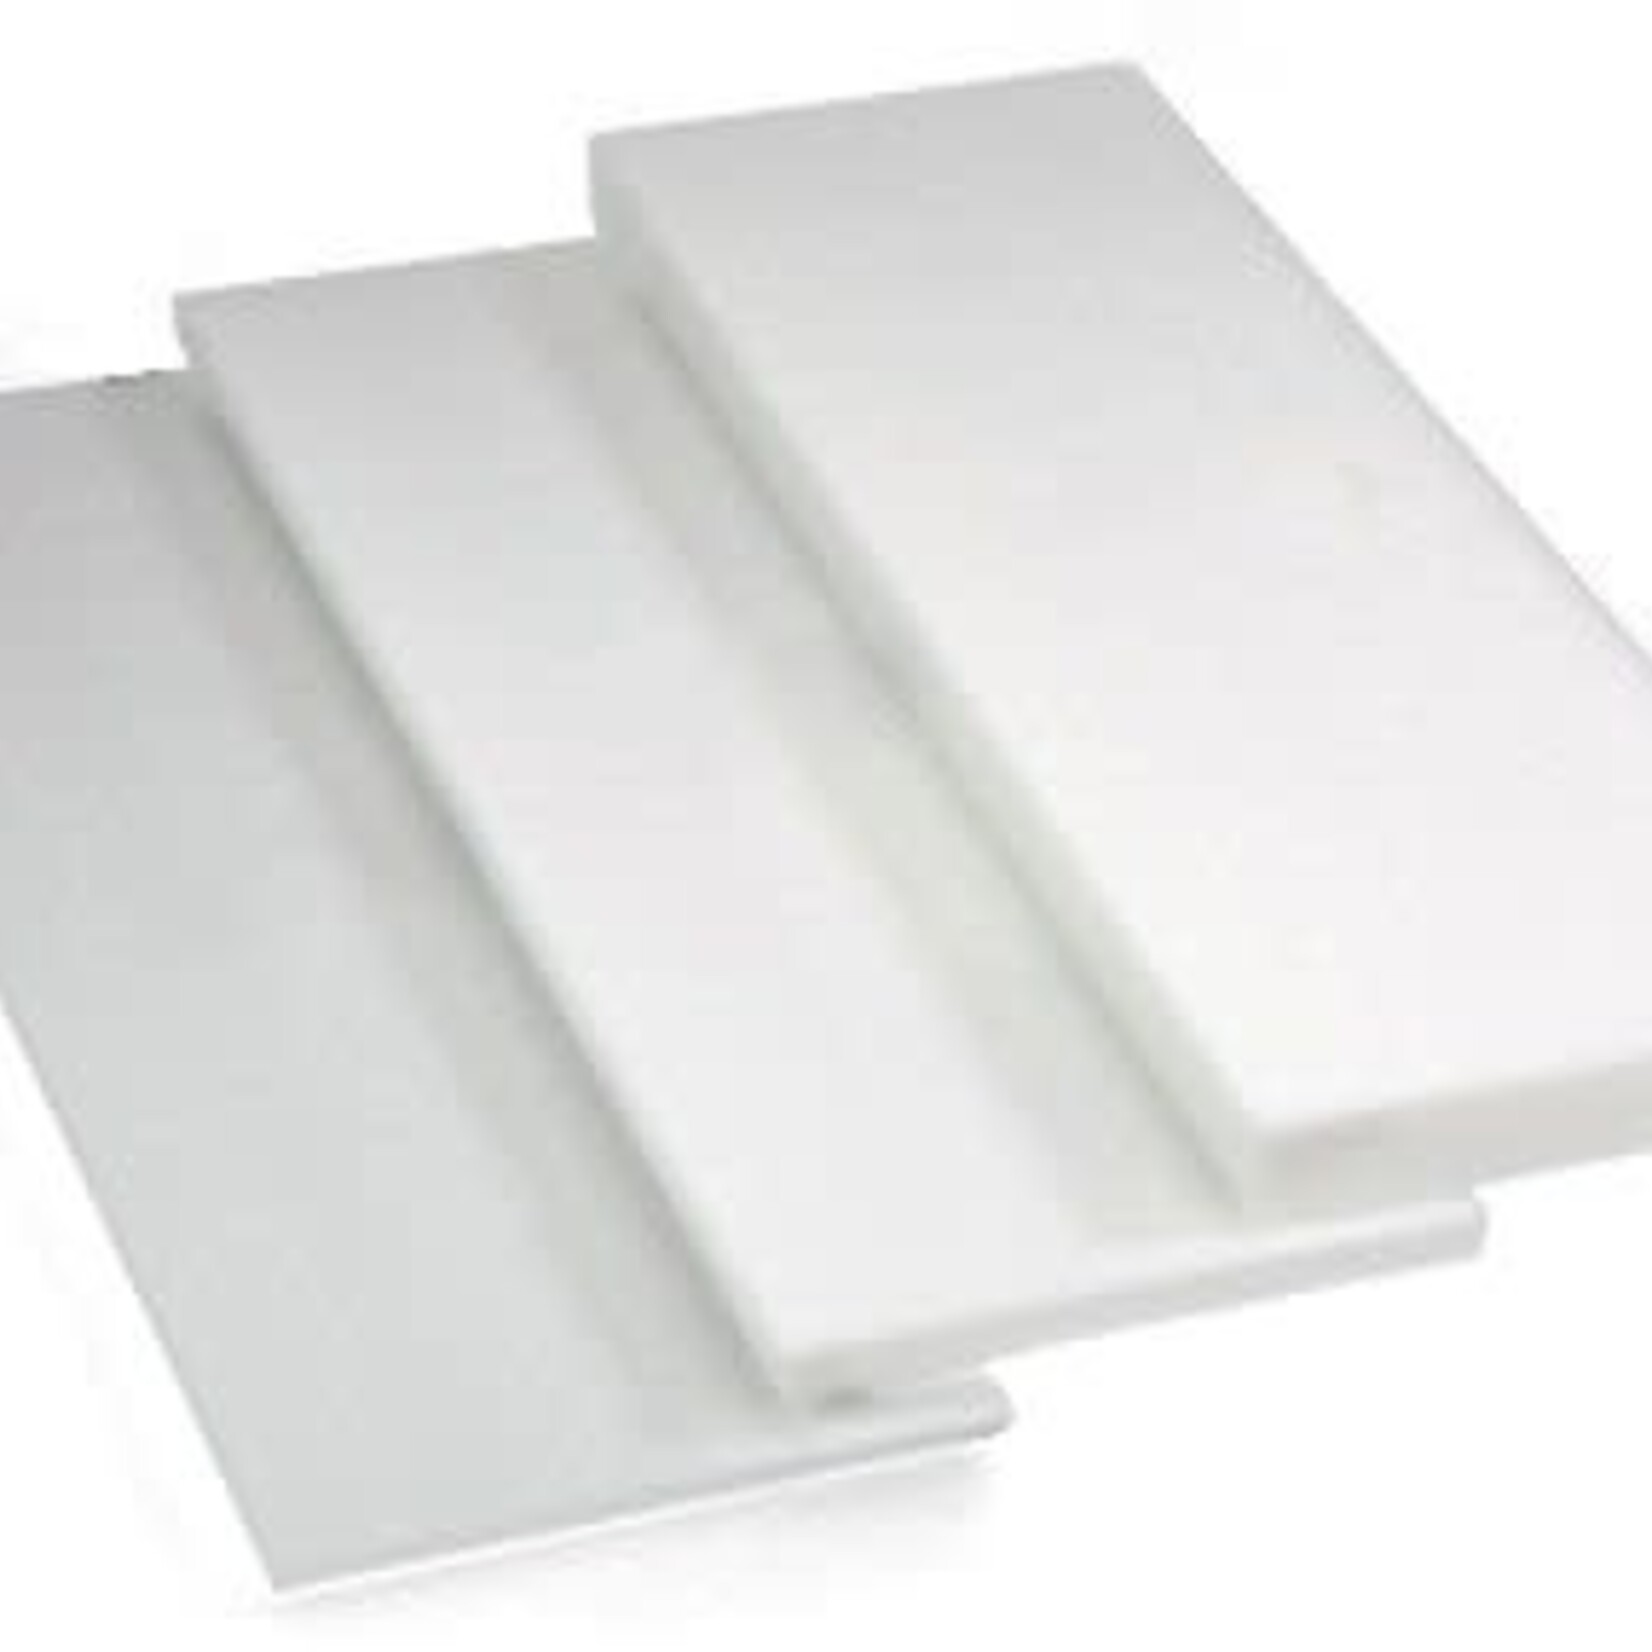 Styrofoam Sheet White 2 x 4feet x 1/2 Inch